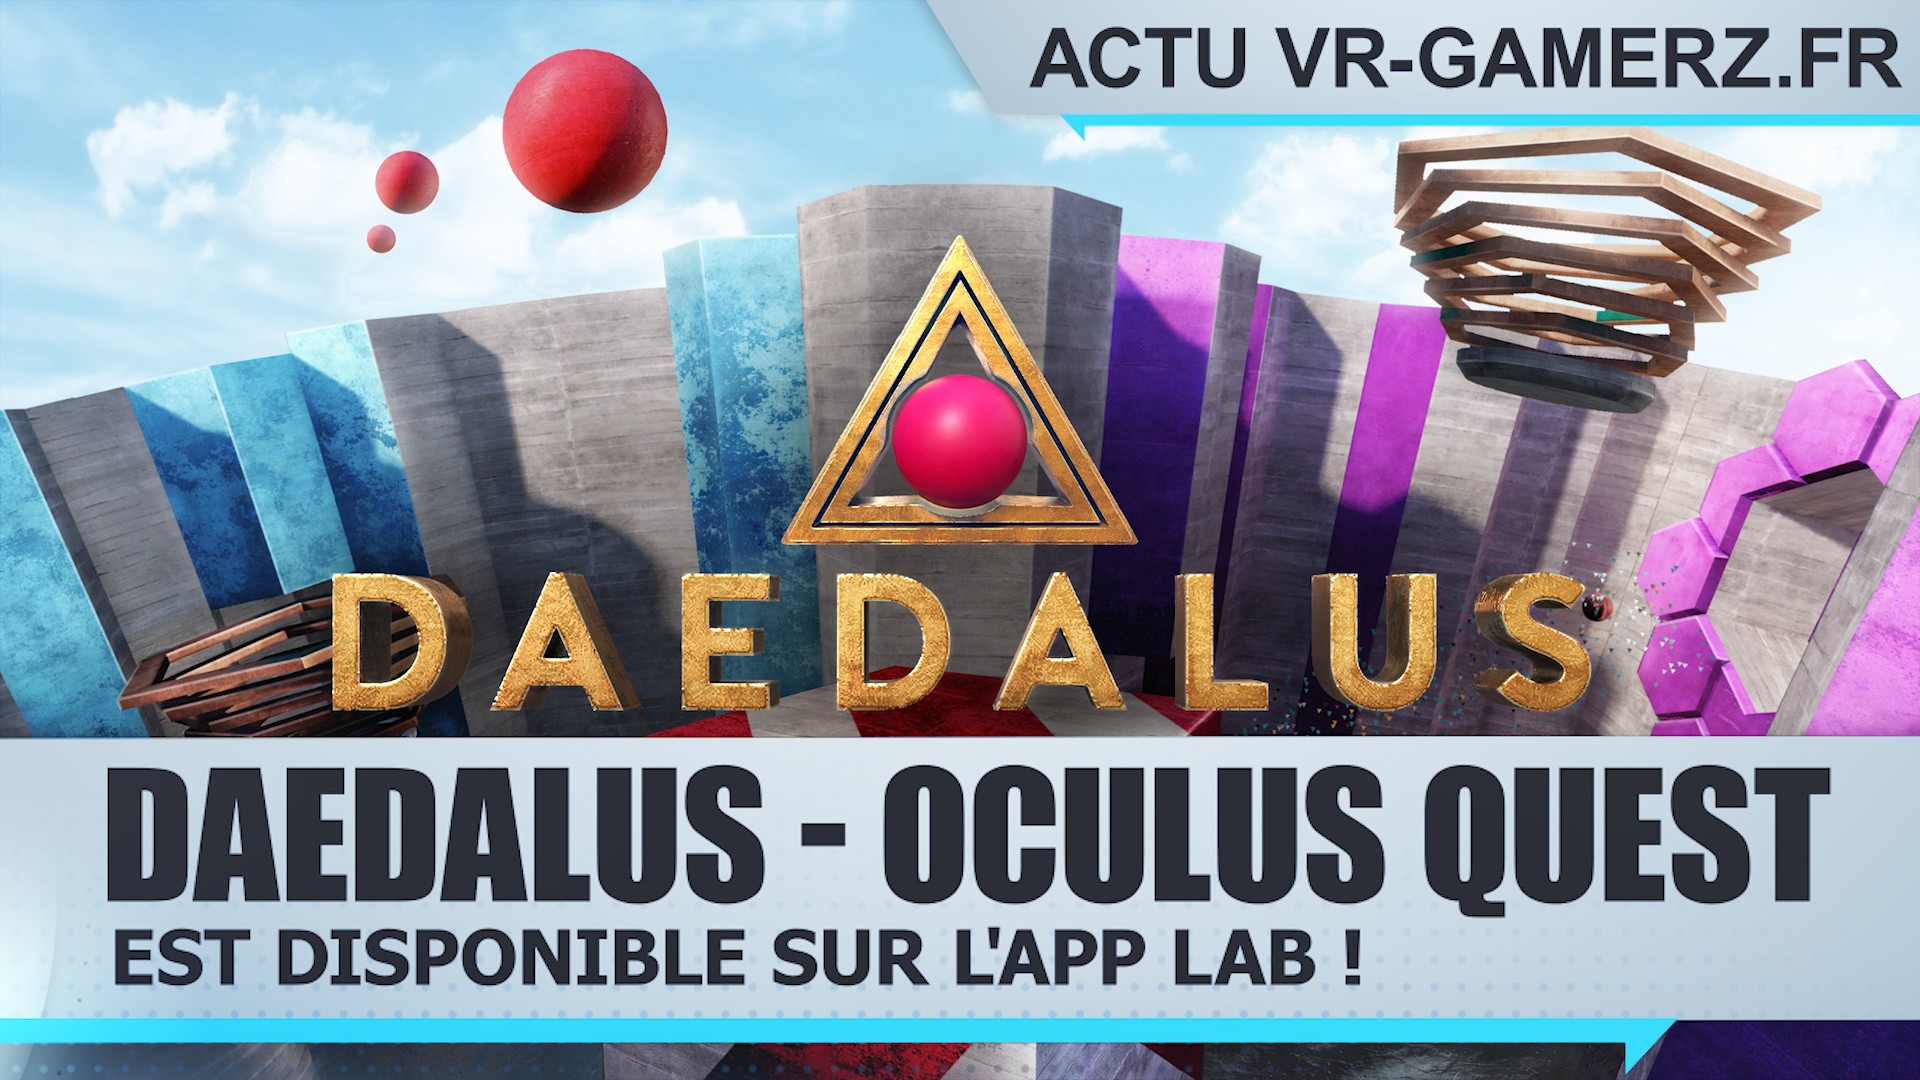 Daedalus est disponible sur l’APP lab de l’Oculus quest !